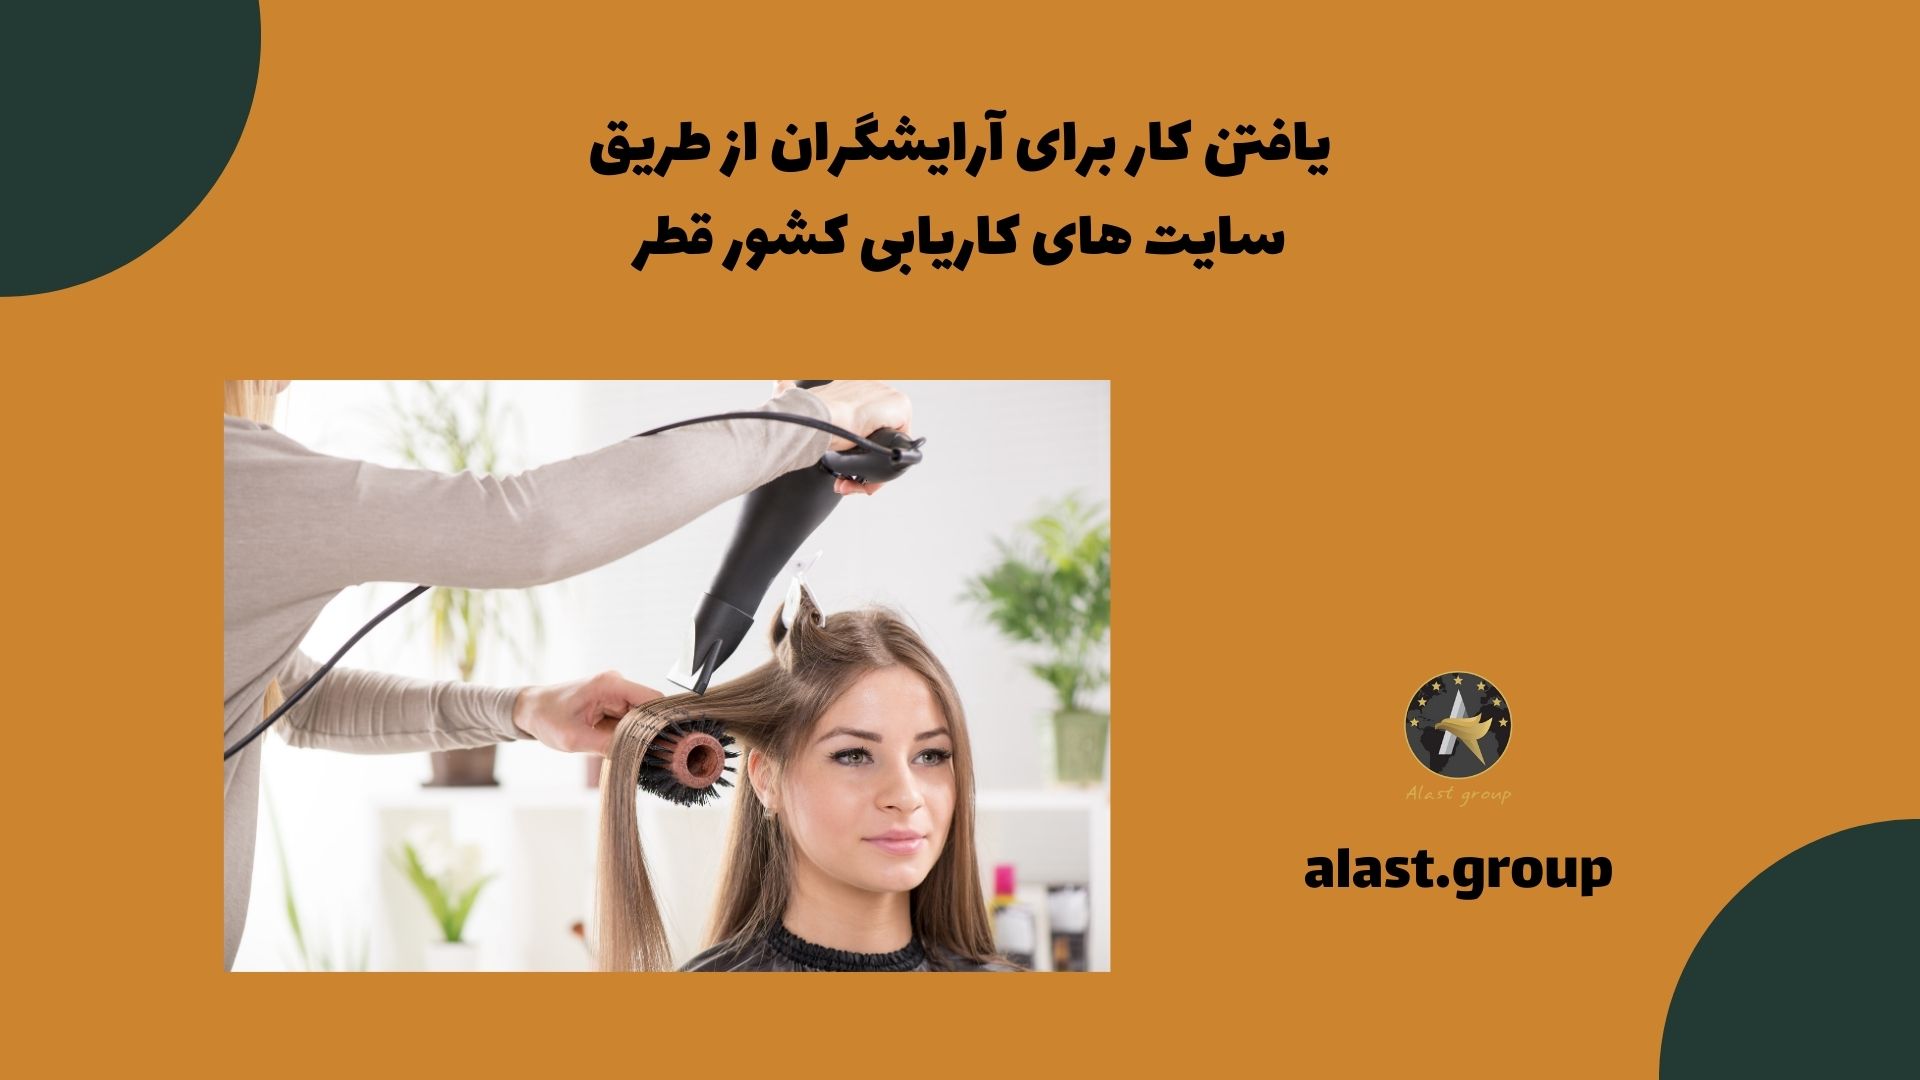 یافتن کار برای آرایشگران از طریق سایت های کاریابی کشور قطر